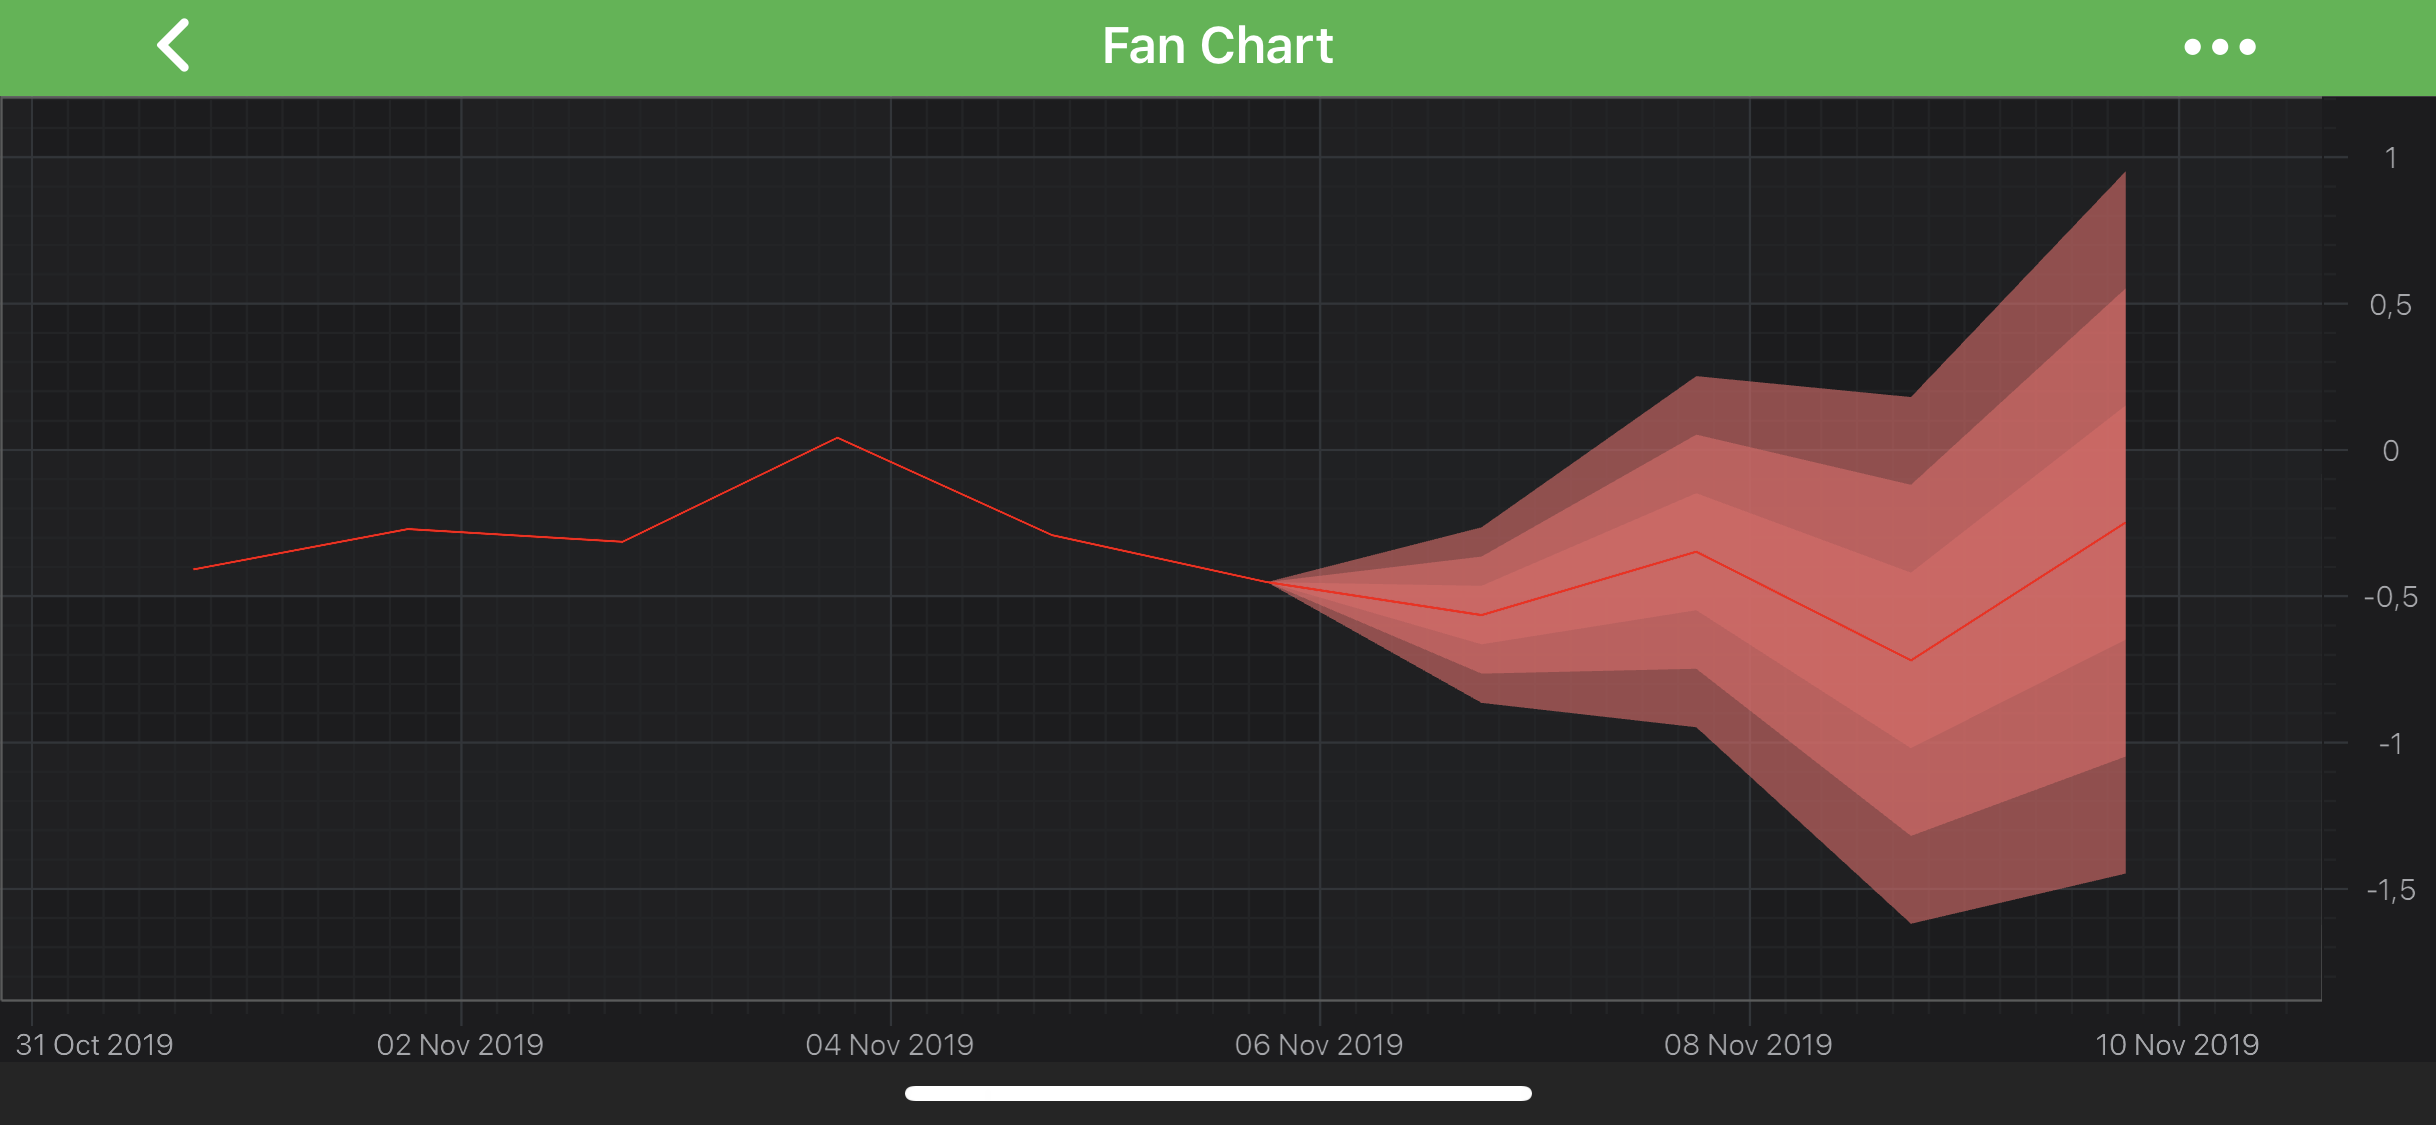 Fan Chart